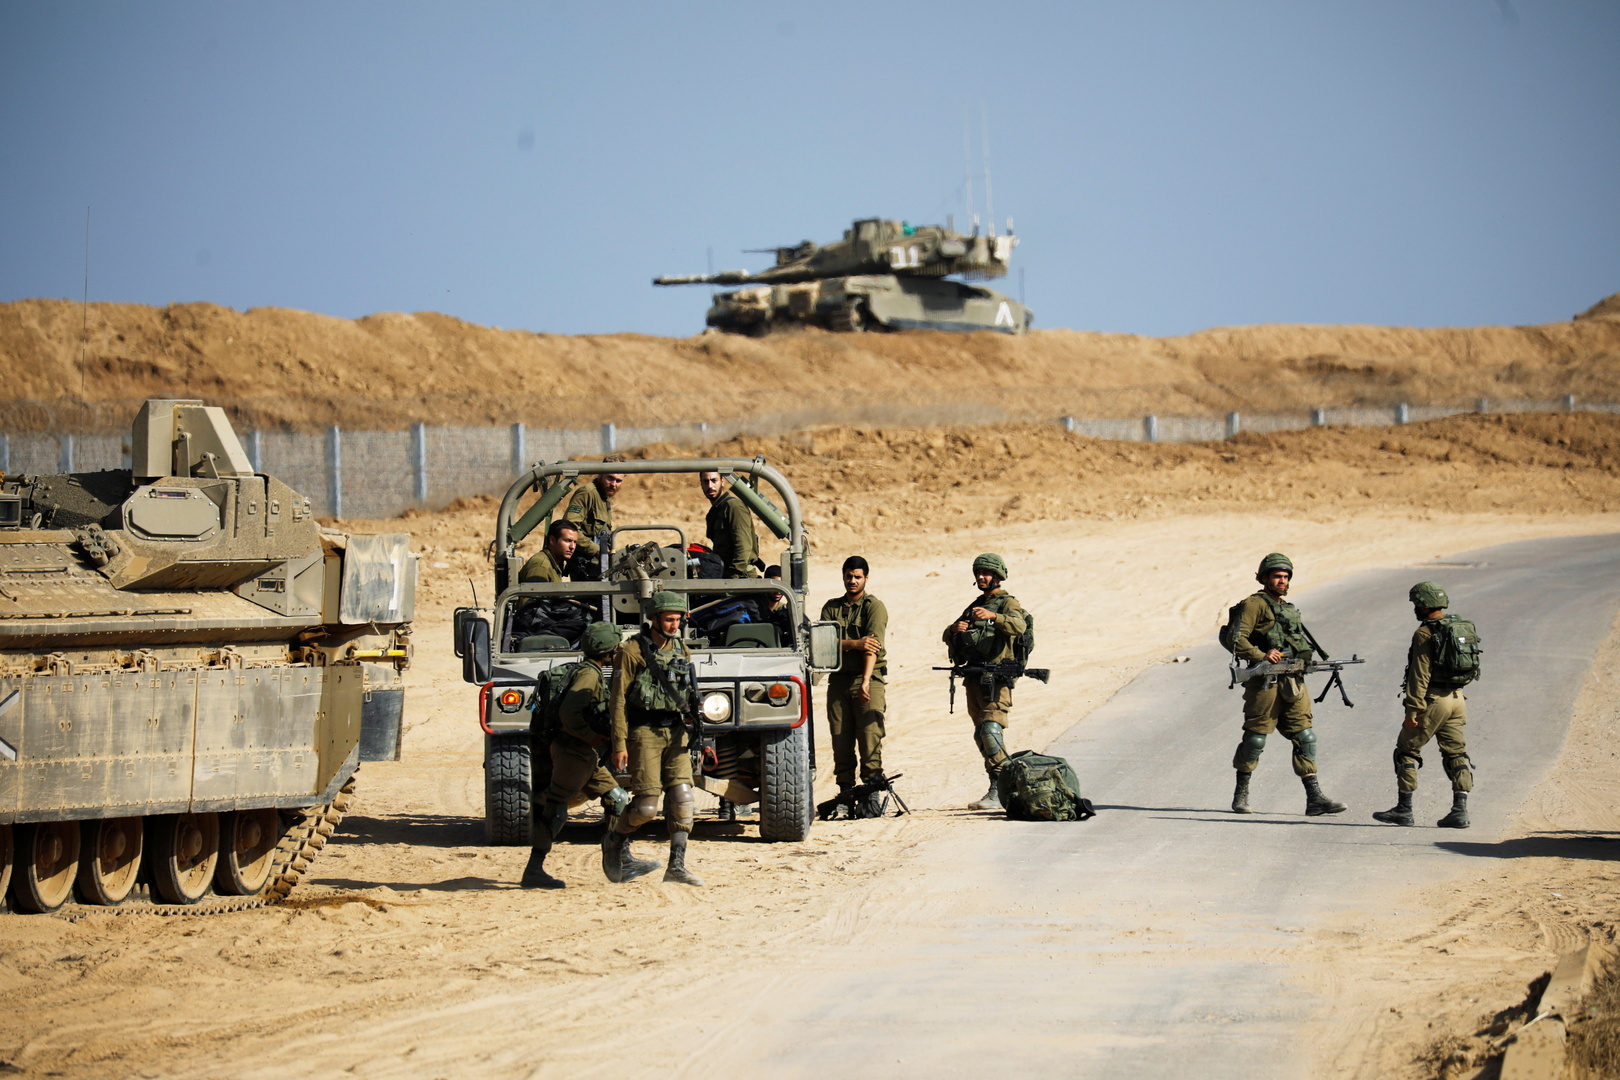 الجيش الإسرائيلي: نتحاور مع الجانب المصري بخصوص حادث إطلاق نار وقع على الحدود قبل ساعات قليلة